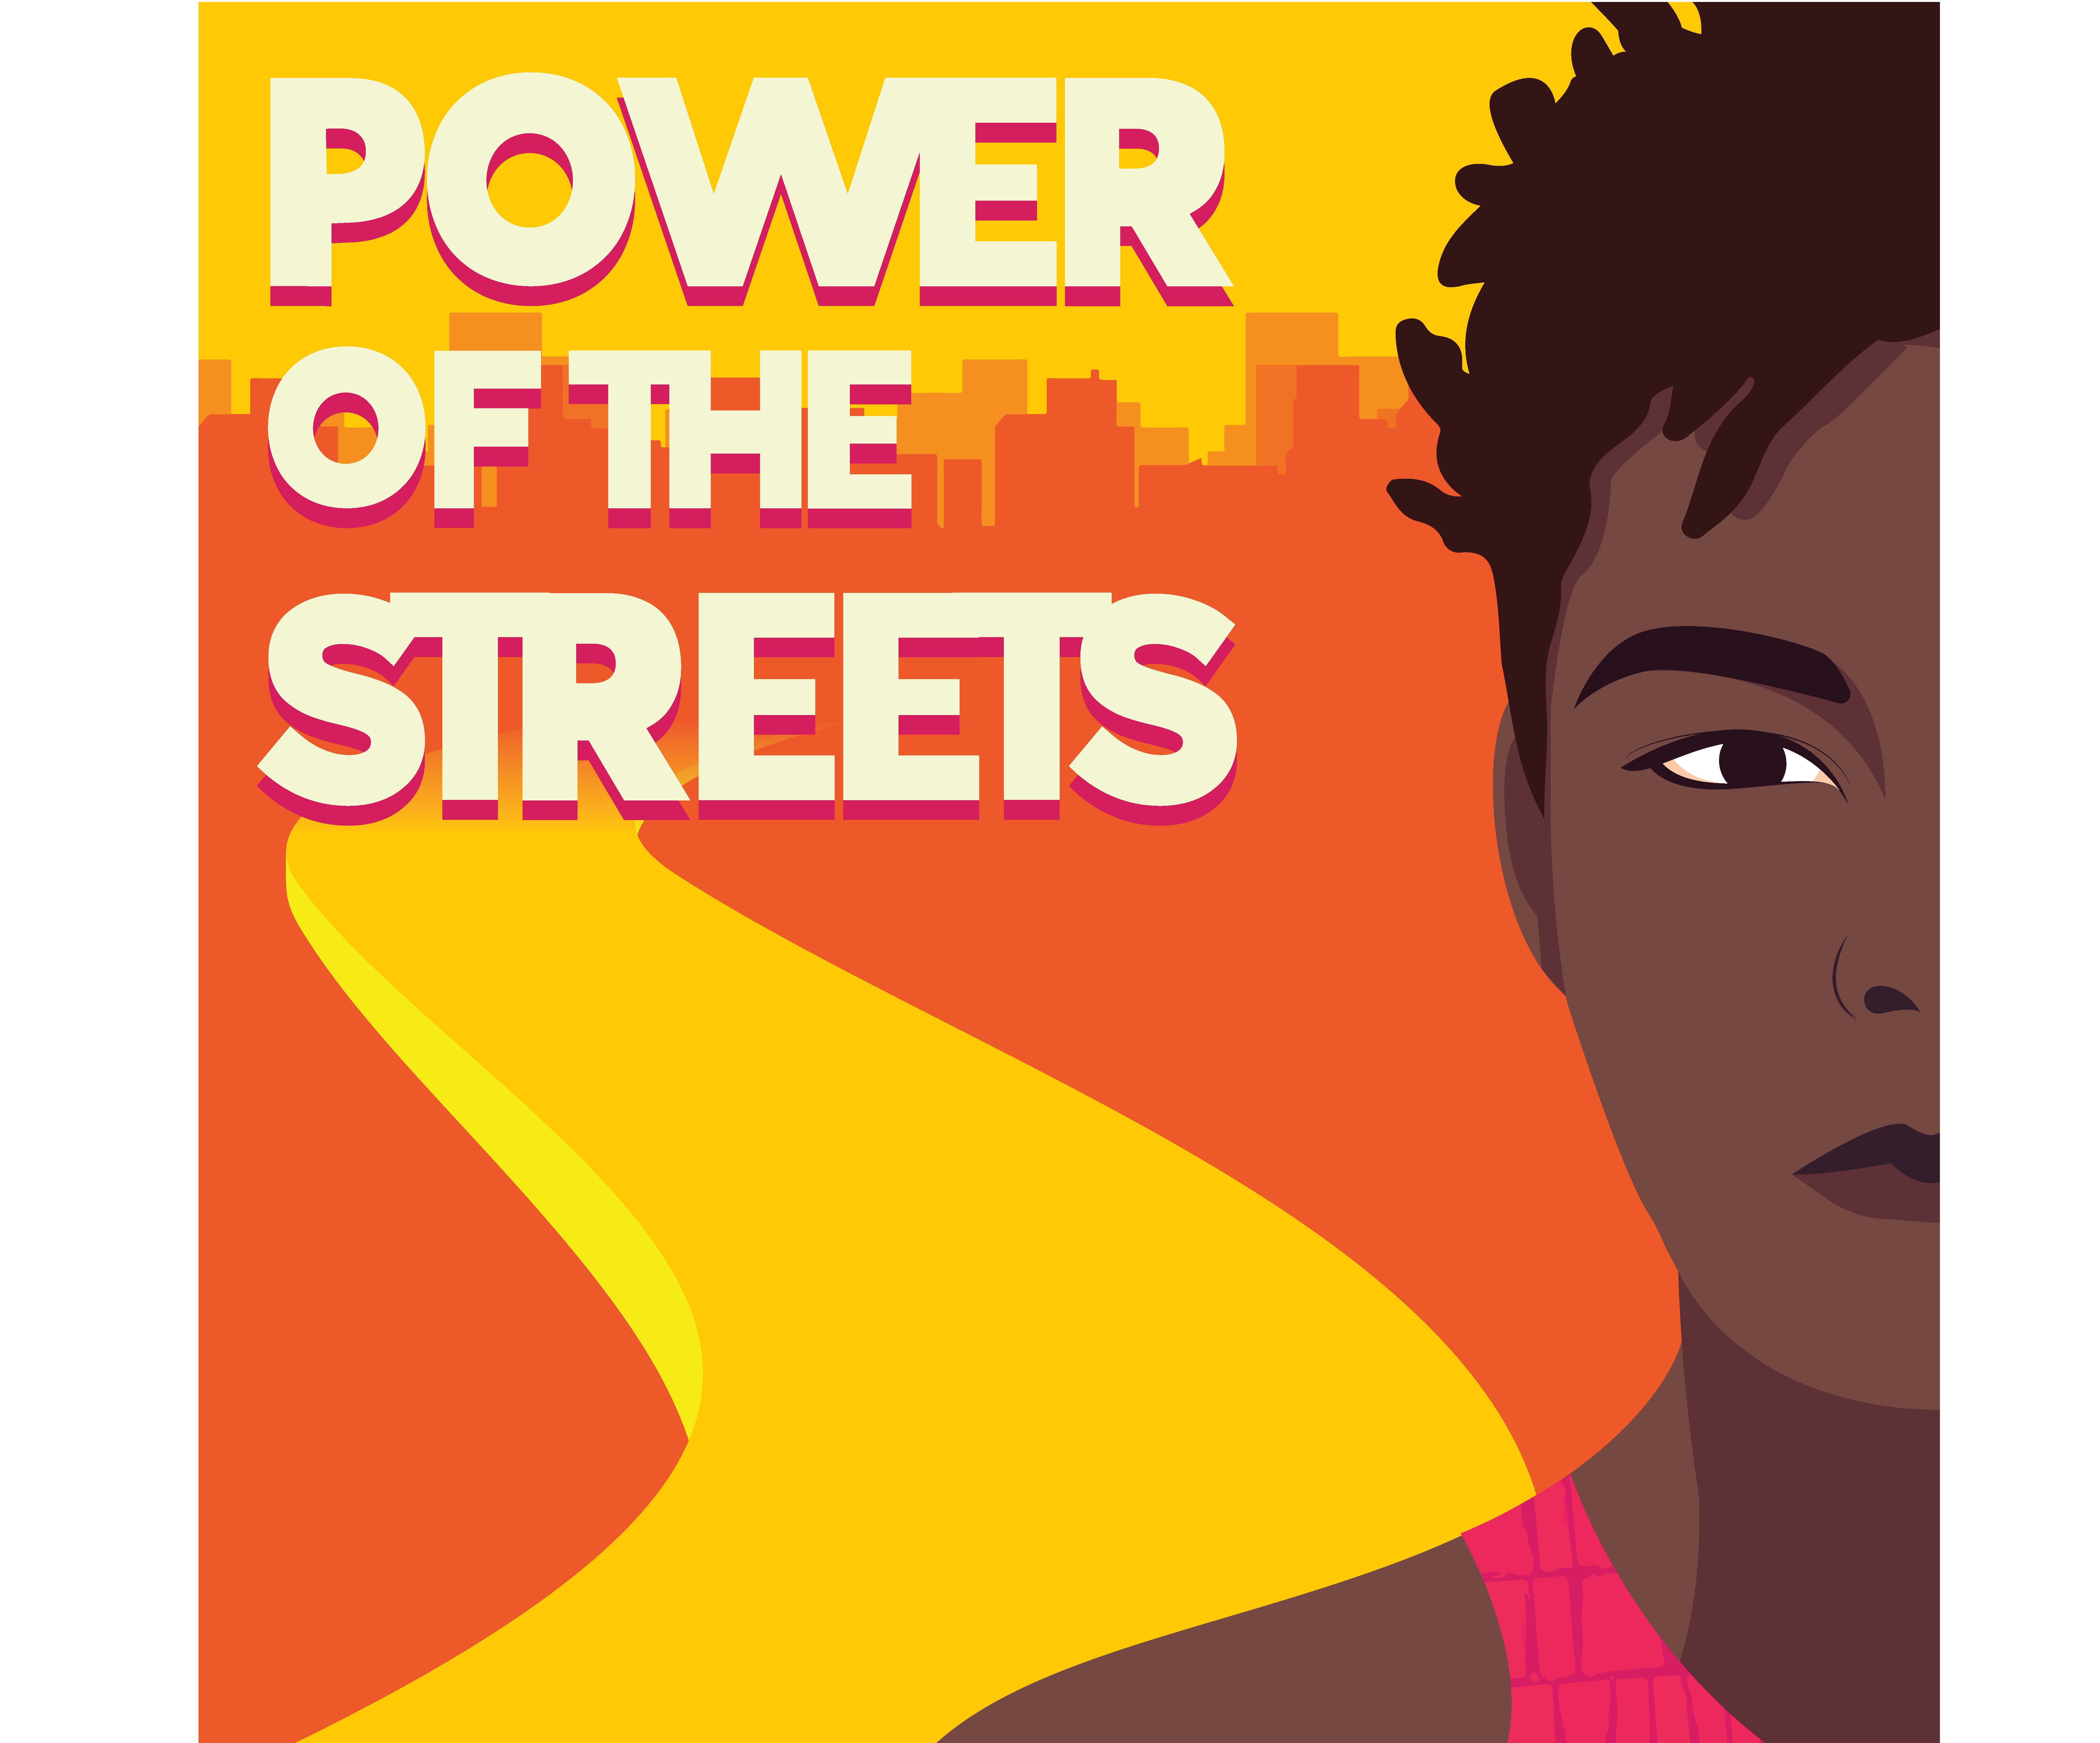  Illustration pour le nouveau  podcast de Human Rights Watch, « Power of the Streets » (« Le pouvoir de la rue »), diffusant des entretiens en anglais avec divers activistes en Afrique, et lancé en mars 2021.